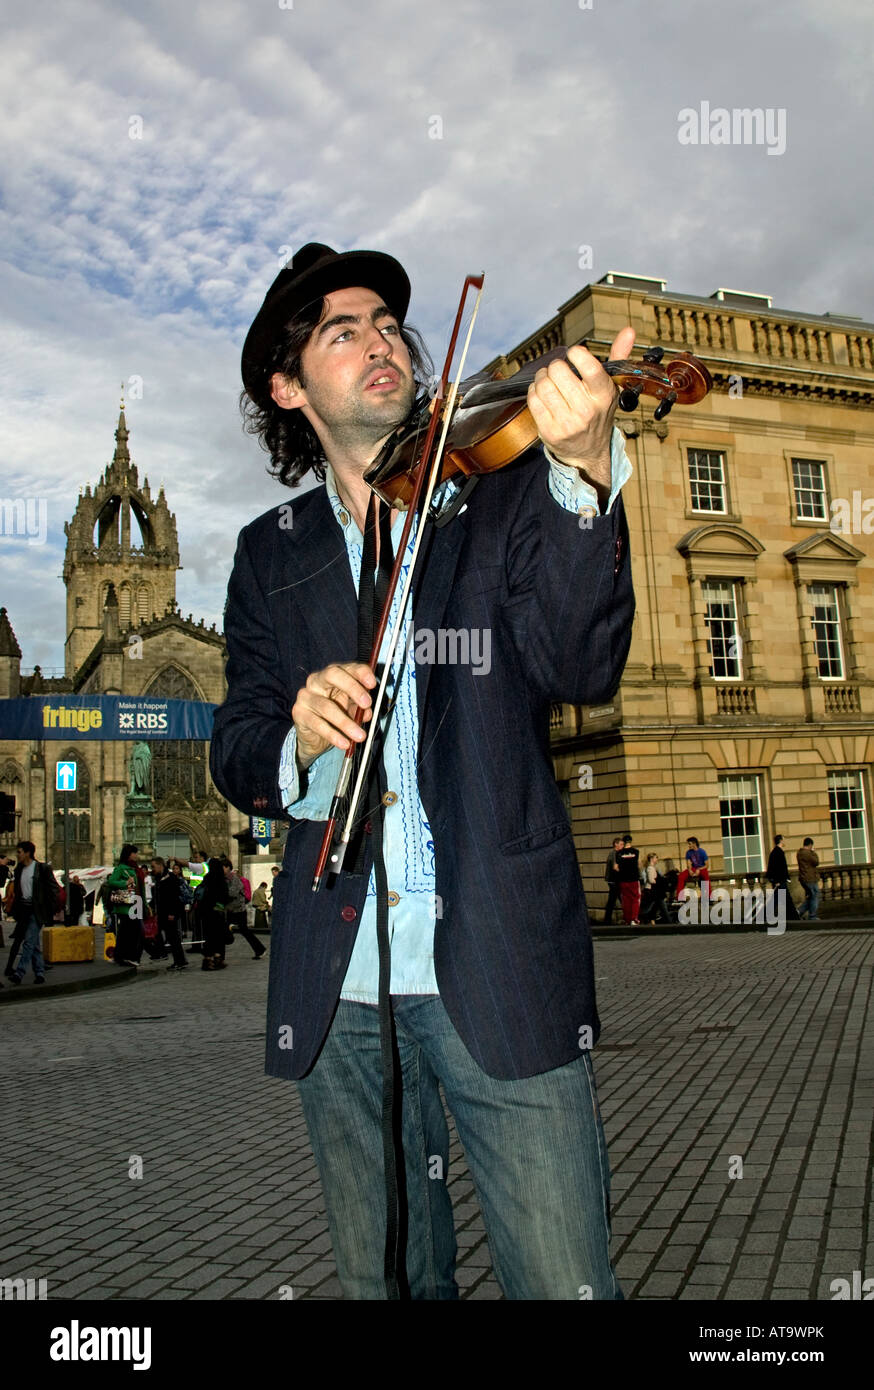 Aindrias de Staic, músico y actor interpreta el violín, Royal Mile, el Festival Fringe de Edimburgo, Escocia, Reino Unido, Europa Foto de stock